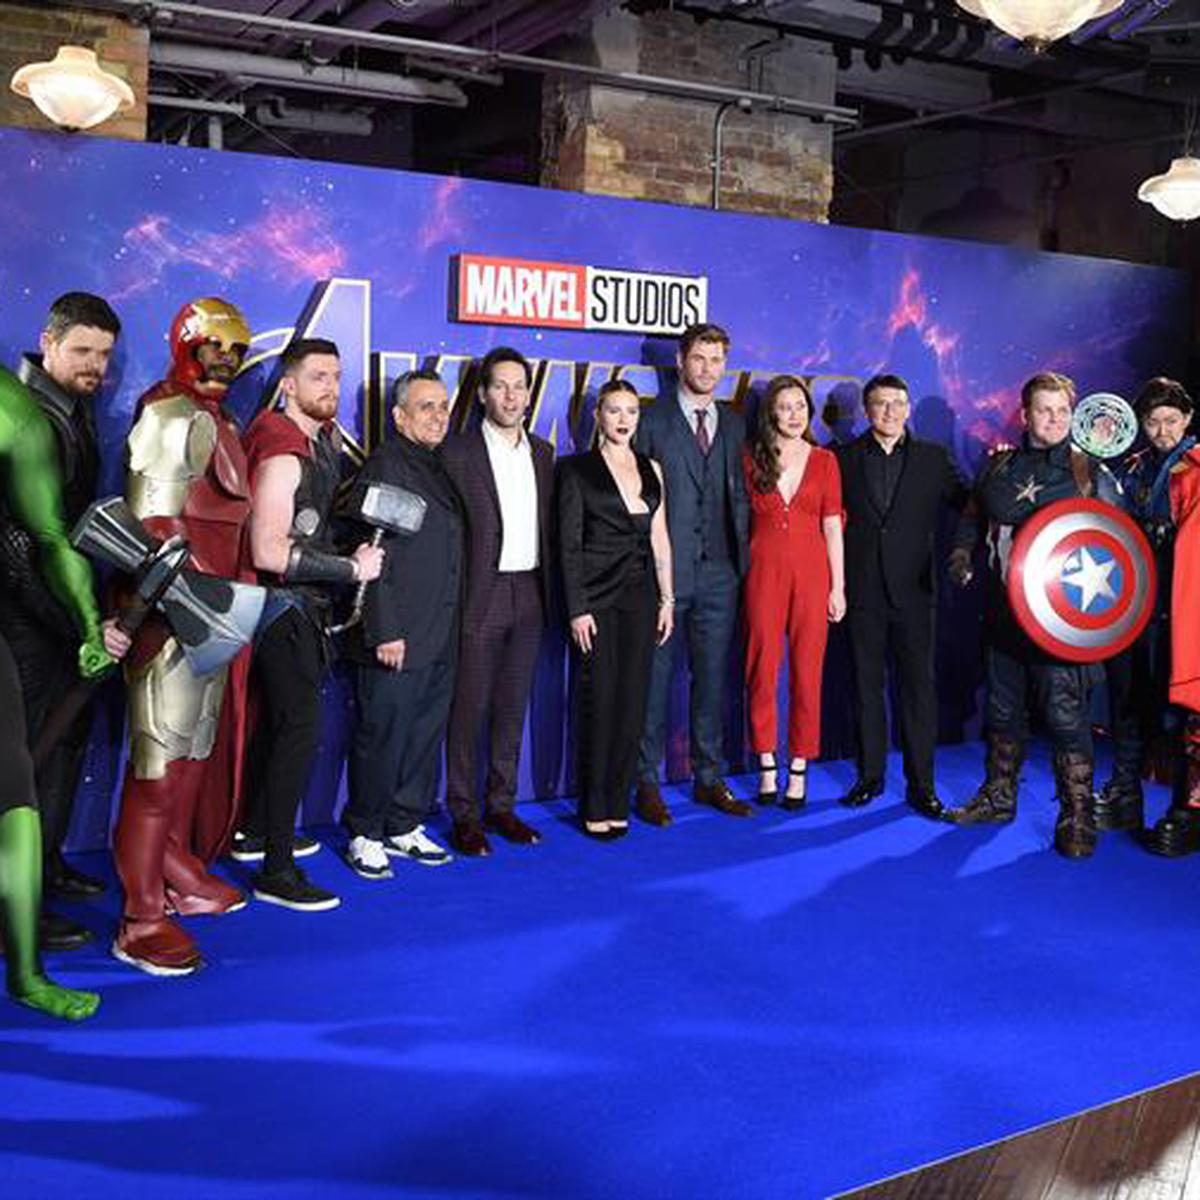 Avengers: Endgame: así le fue en la taquilla peruana en su primer